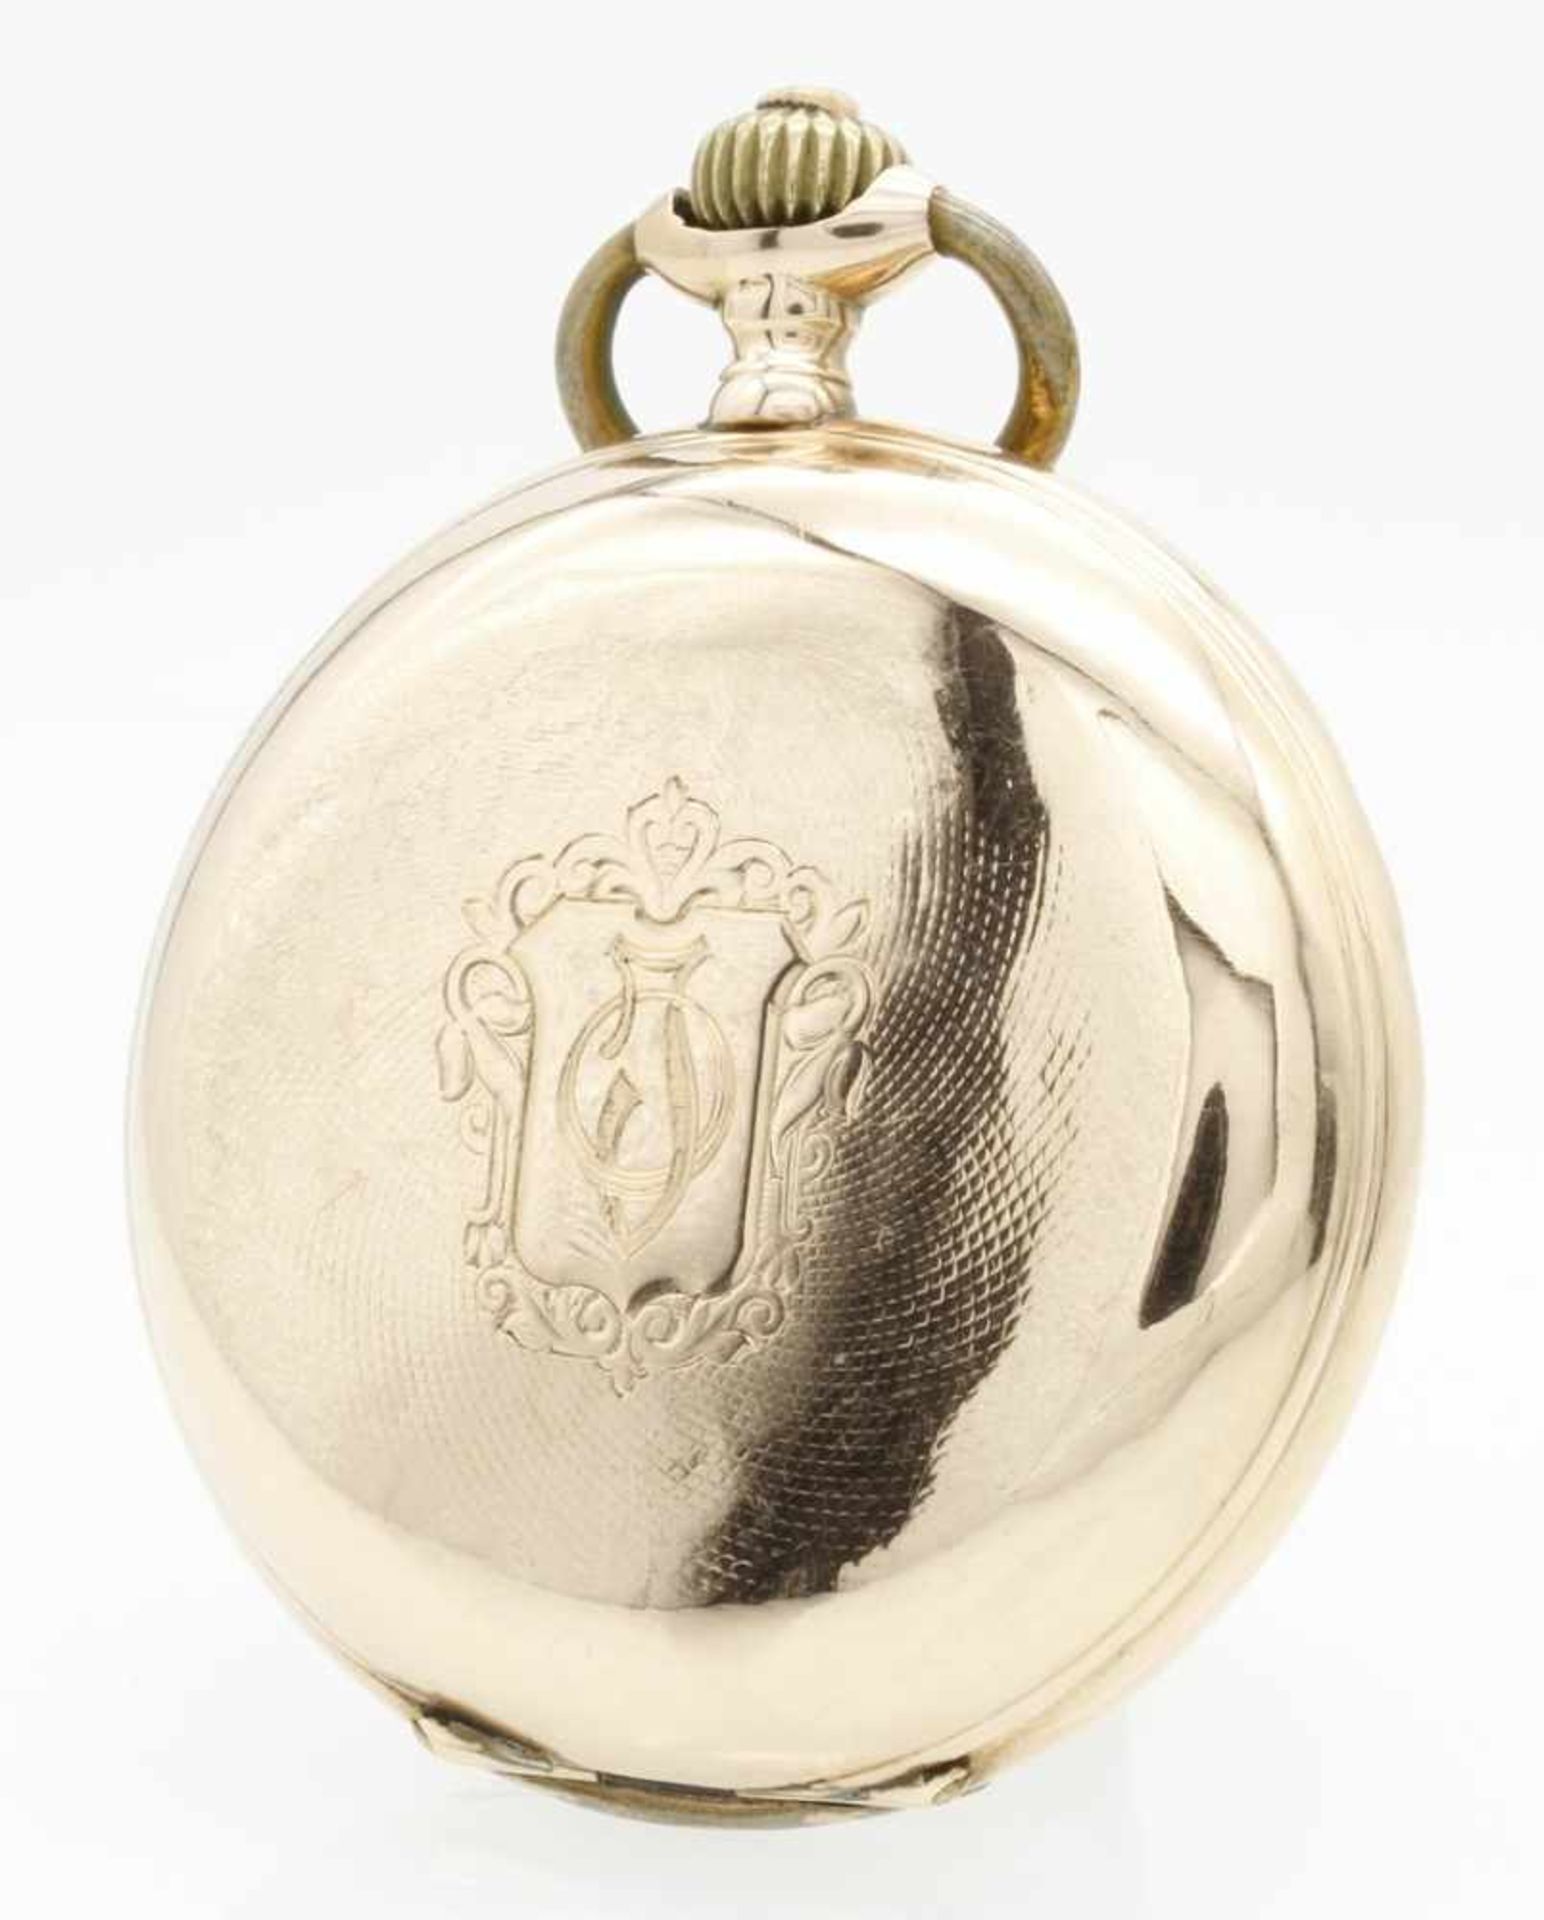 Goldene Phenix Watch Co. SA Savonnette / Taschenuhr, um 1910 - Bild 2 aus 5